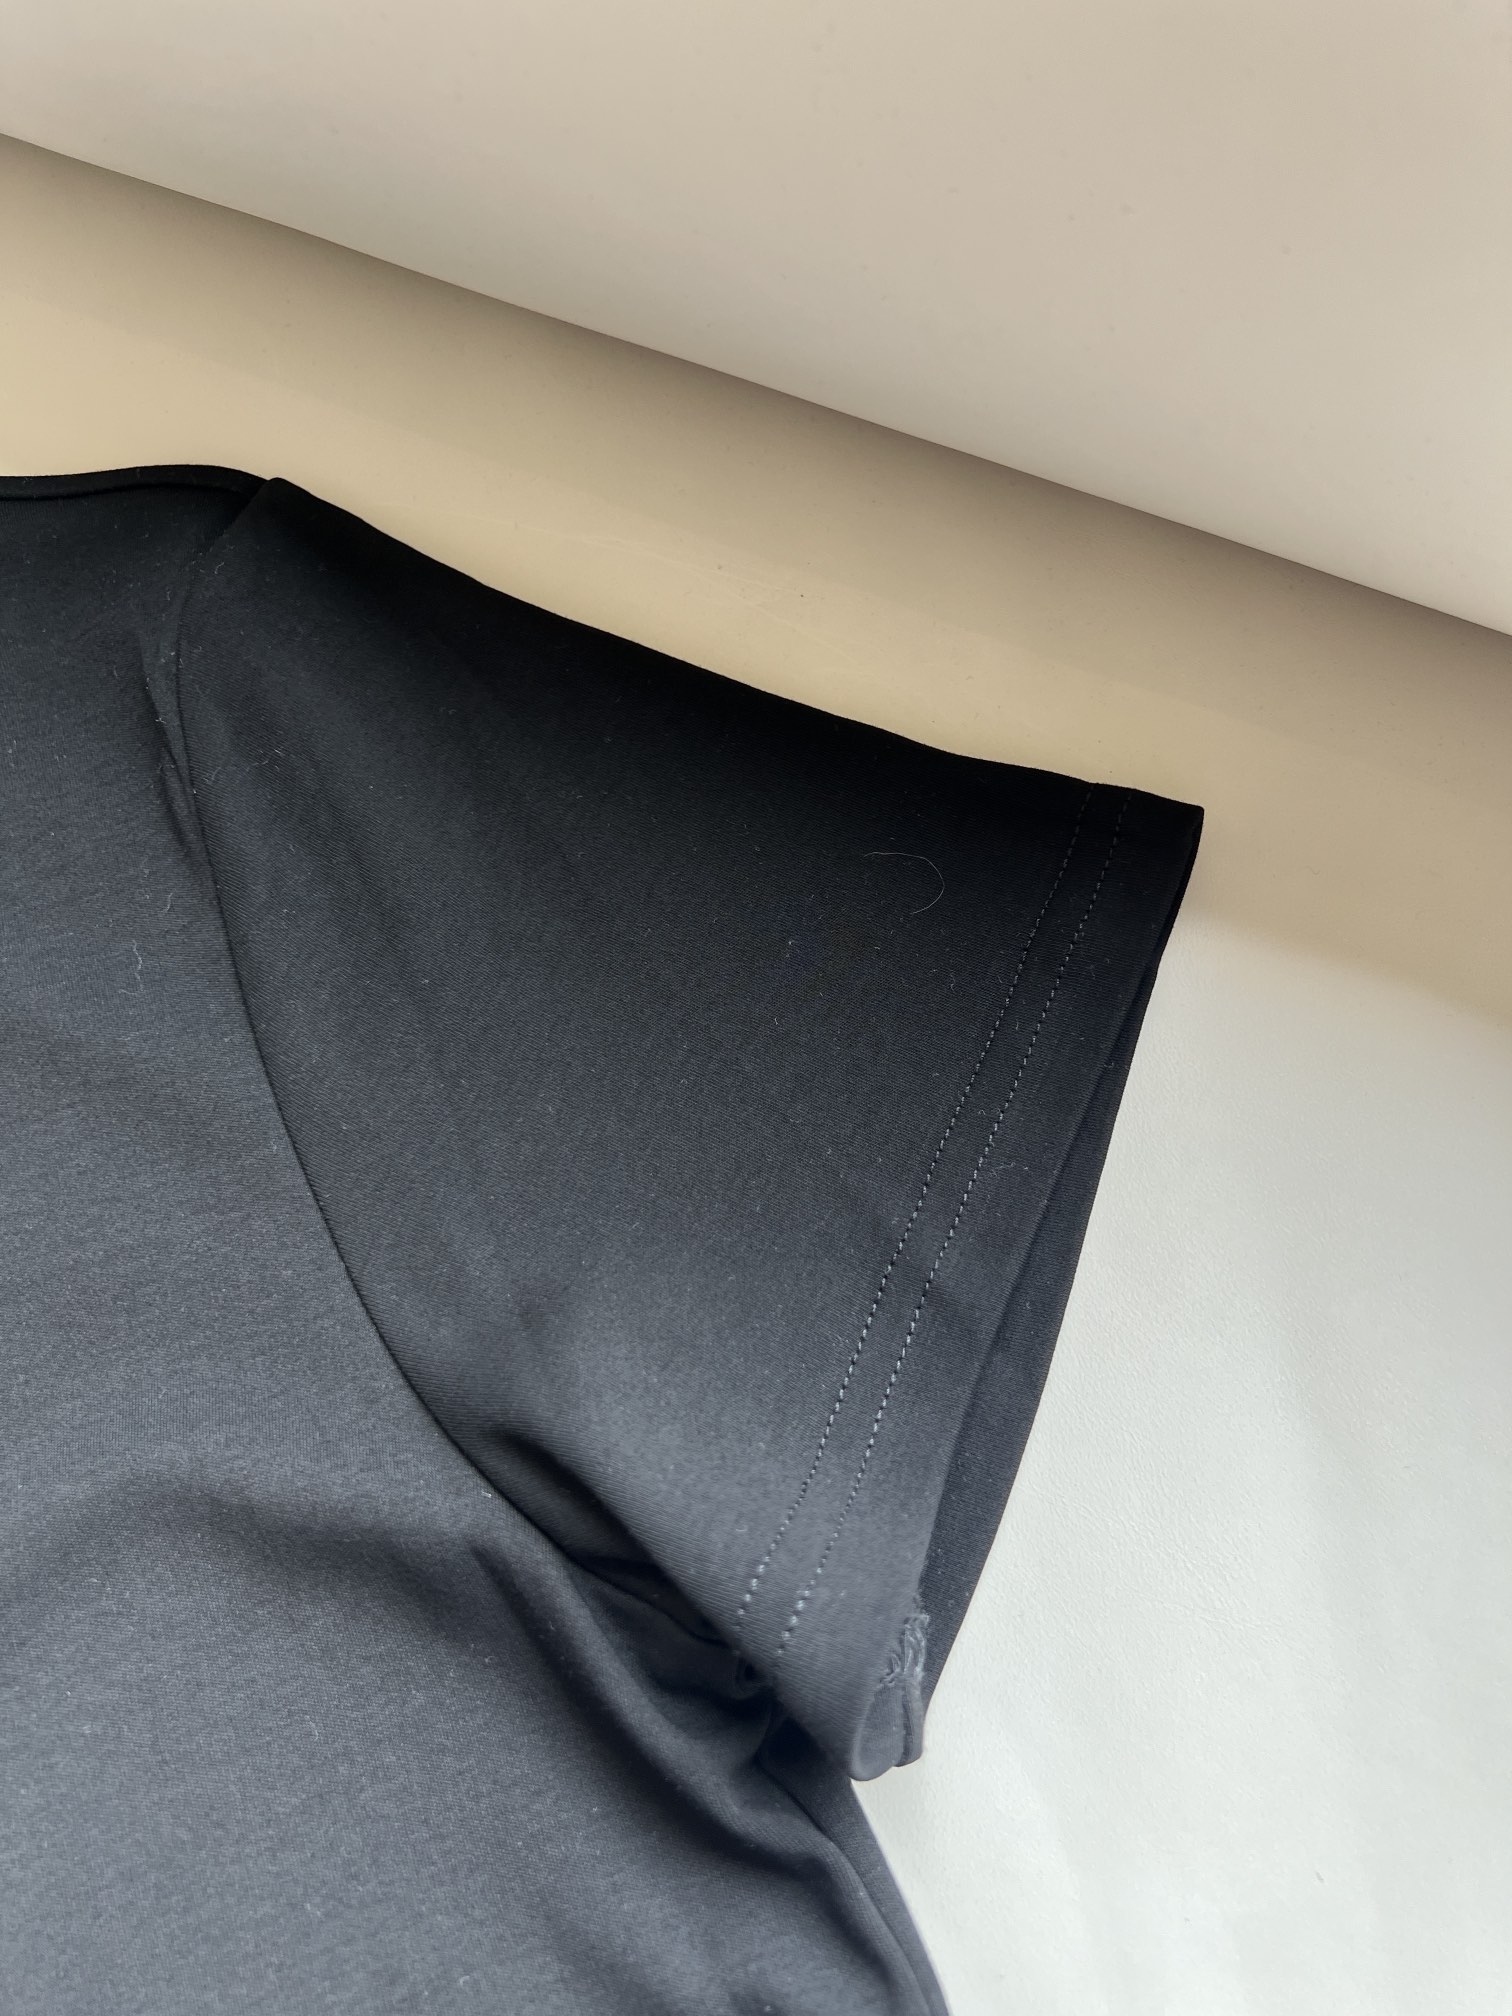 JIL新款基础款极简主义设计的追随者节险美学+简洁线条针织棉面料完美质感四色sml